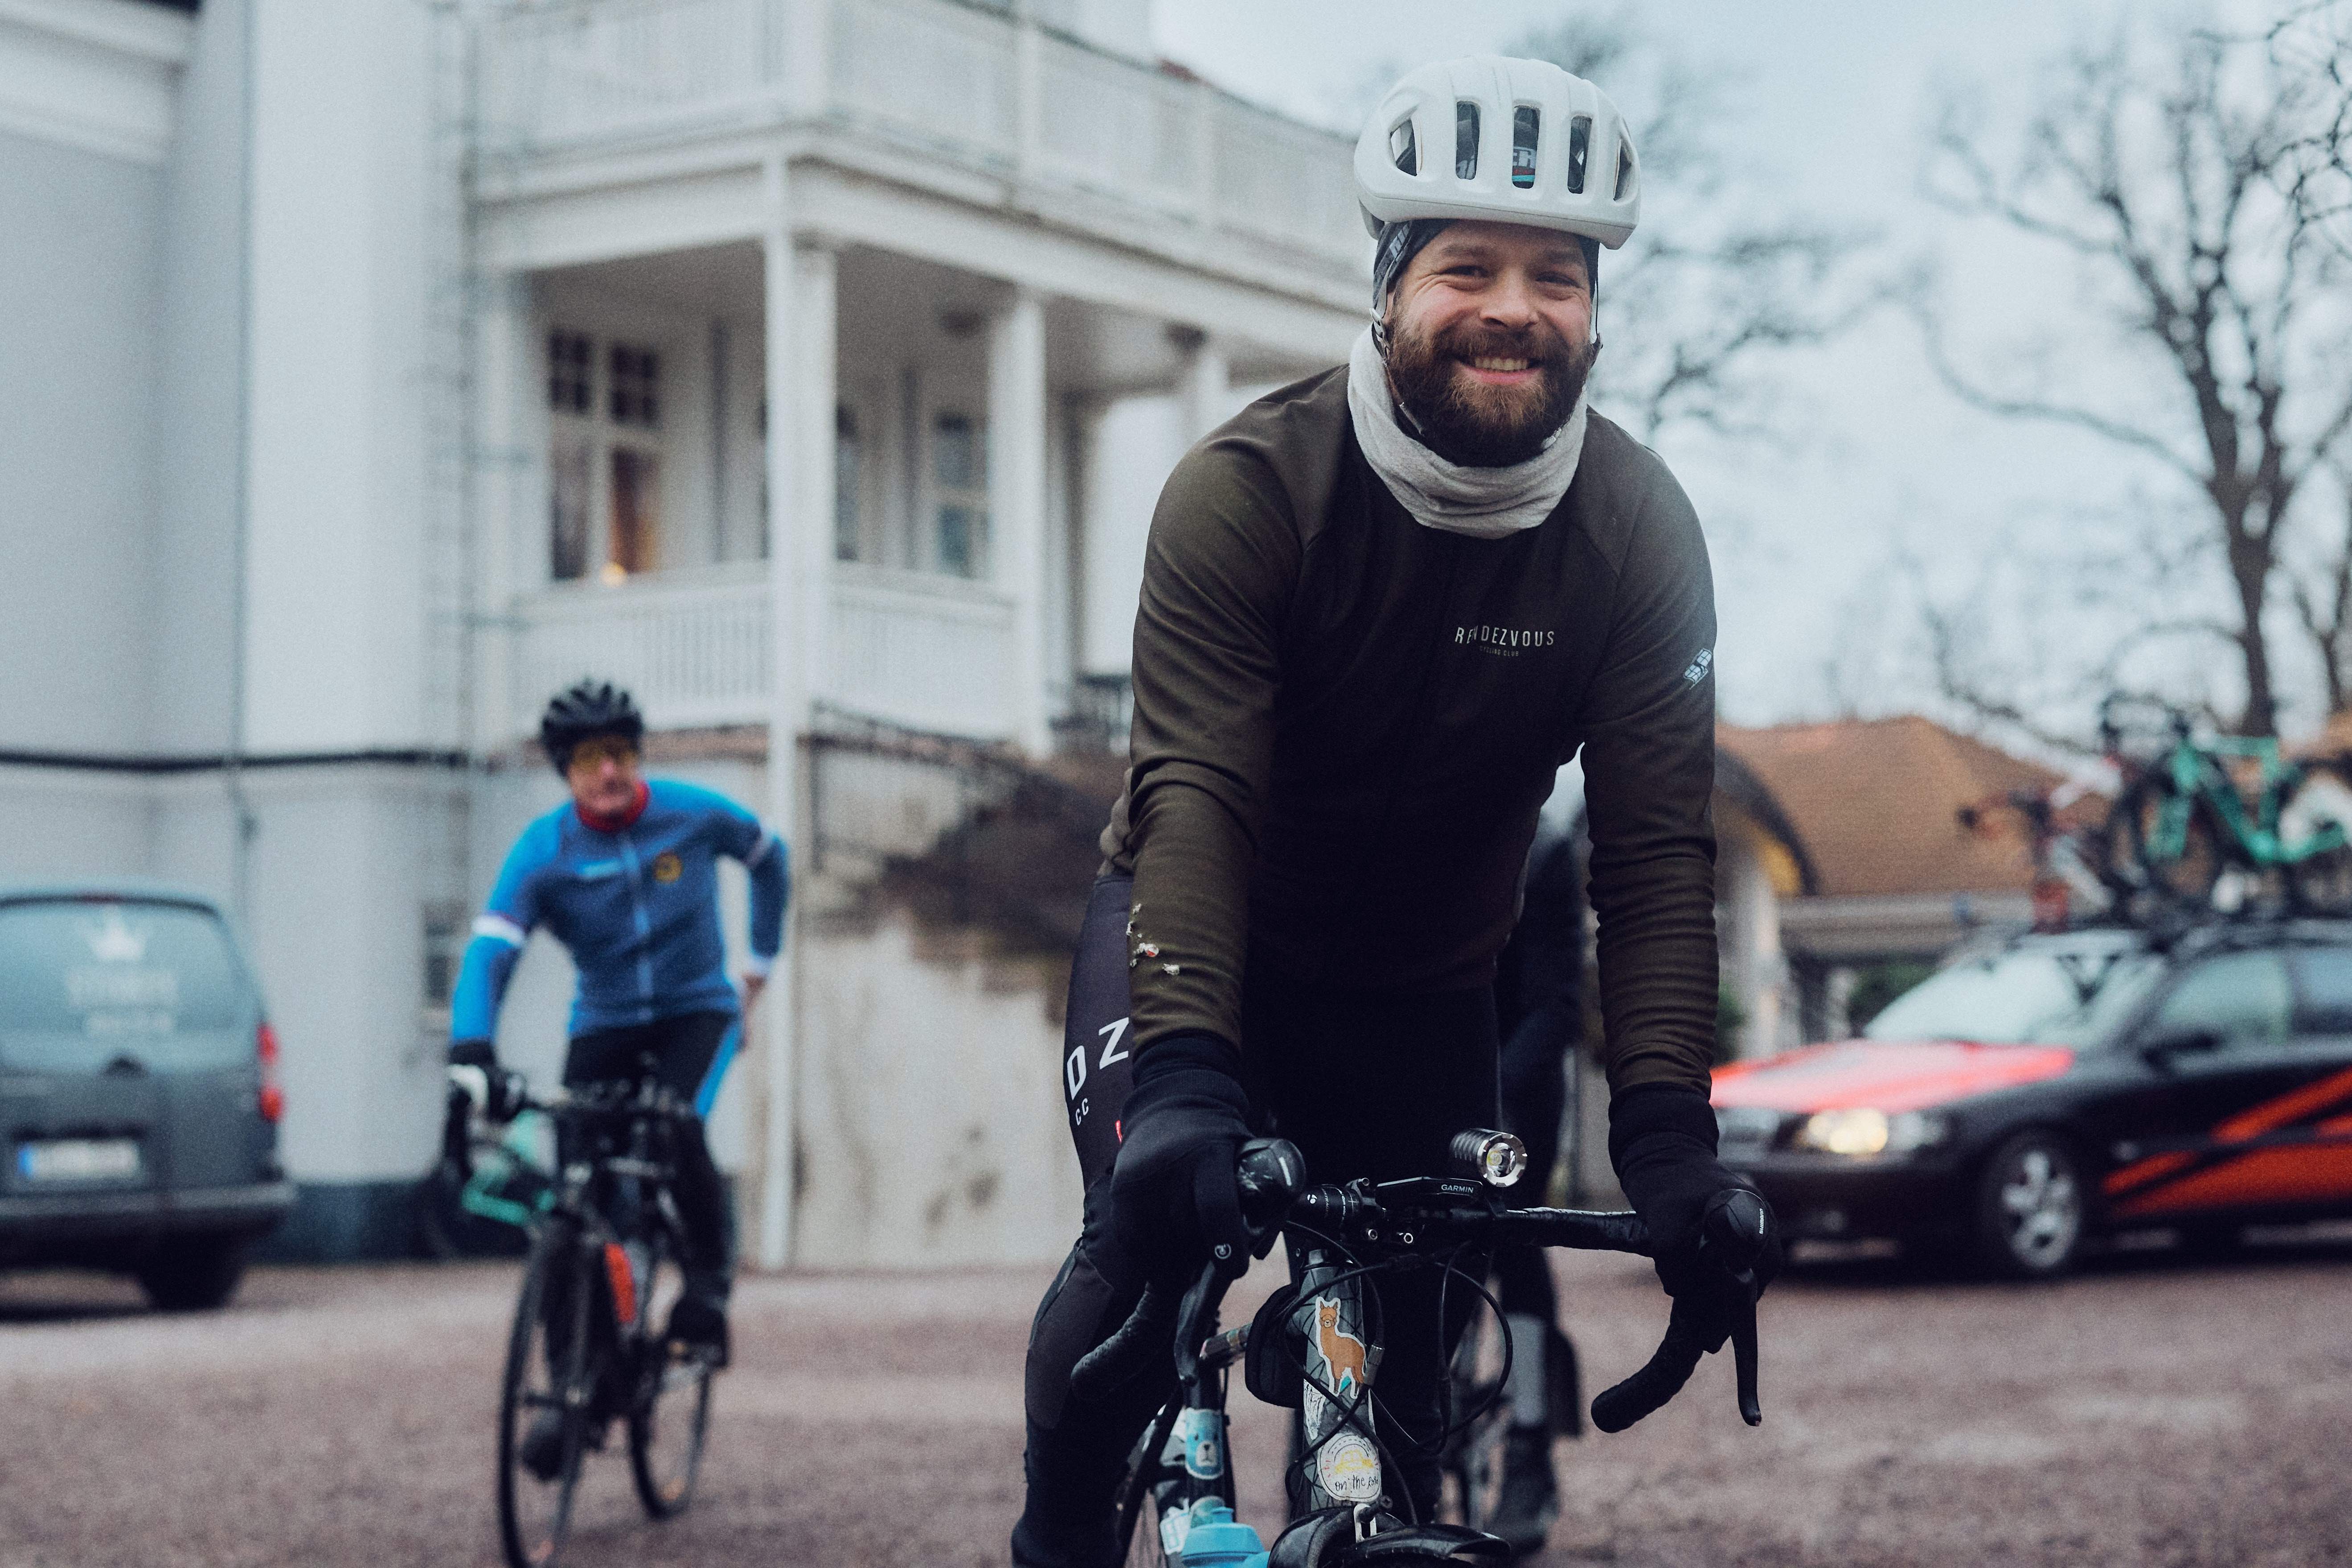 Den 28 januari var det premiär för Abloc Winter Challenge för Andreas Brettmarks del. Laddad med extra lampor och kläder blev loppet en ny och spännande cykelutmaning.